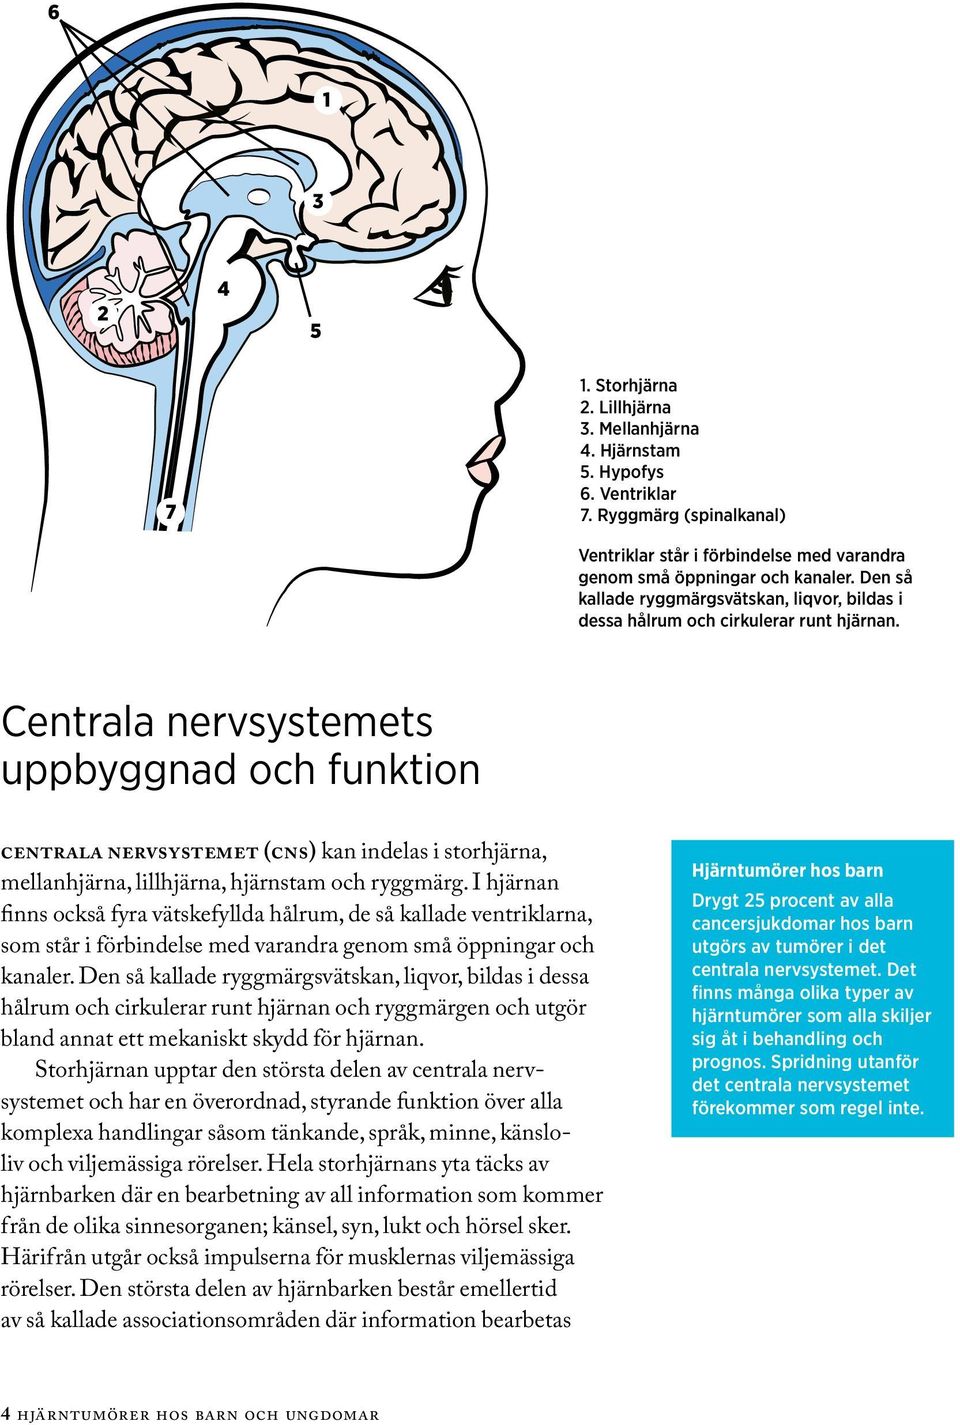 Centrala nervsystemets uppbyggnad och funktion centrala nervsystemet (cns) kan indelas i storhjärna, mellanhjärna, lillhjärna, hjärnstam och ryggmärg.